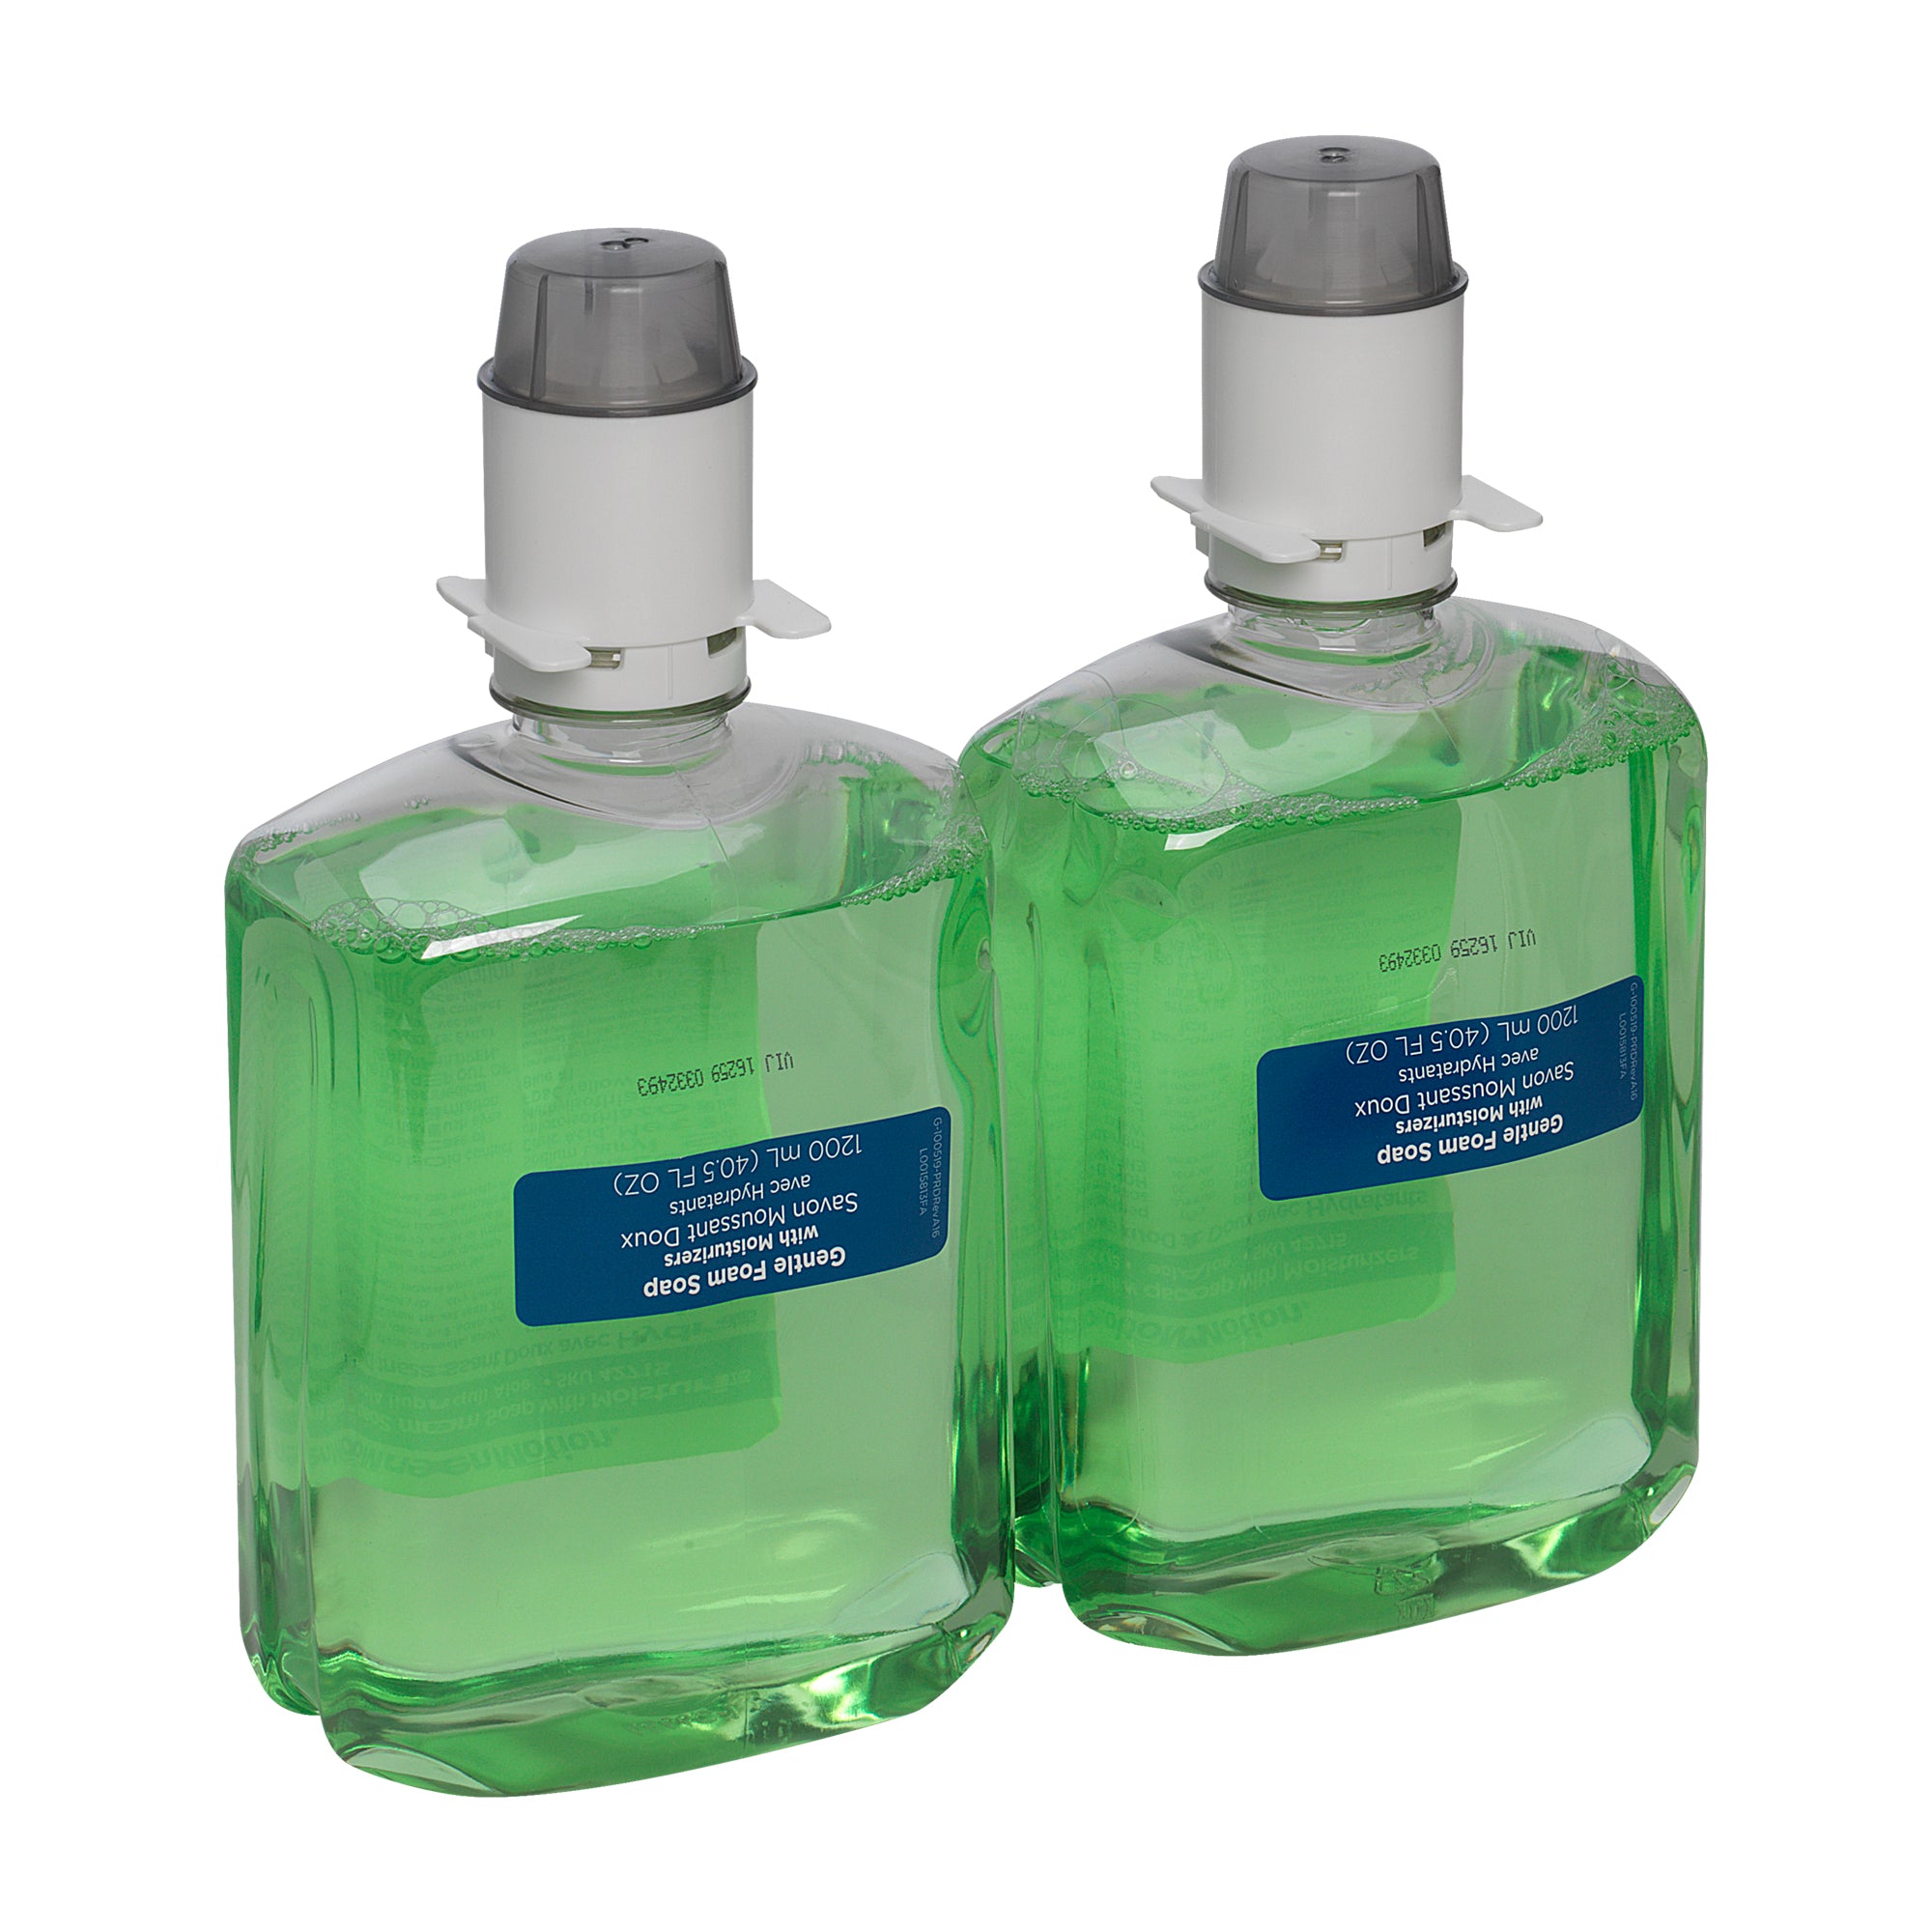 סבון קצף בתוספת קרם לחות מסדרת אנמושן דור 2, בריח אלוורה מרגיעה (2 בקבוקים של 1200 ML) סה"כ 2400, 6000 שימושים